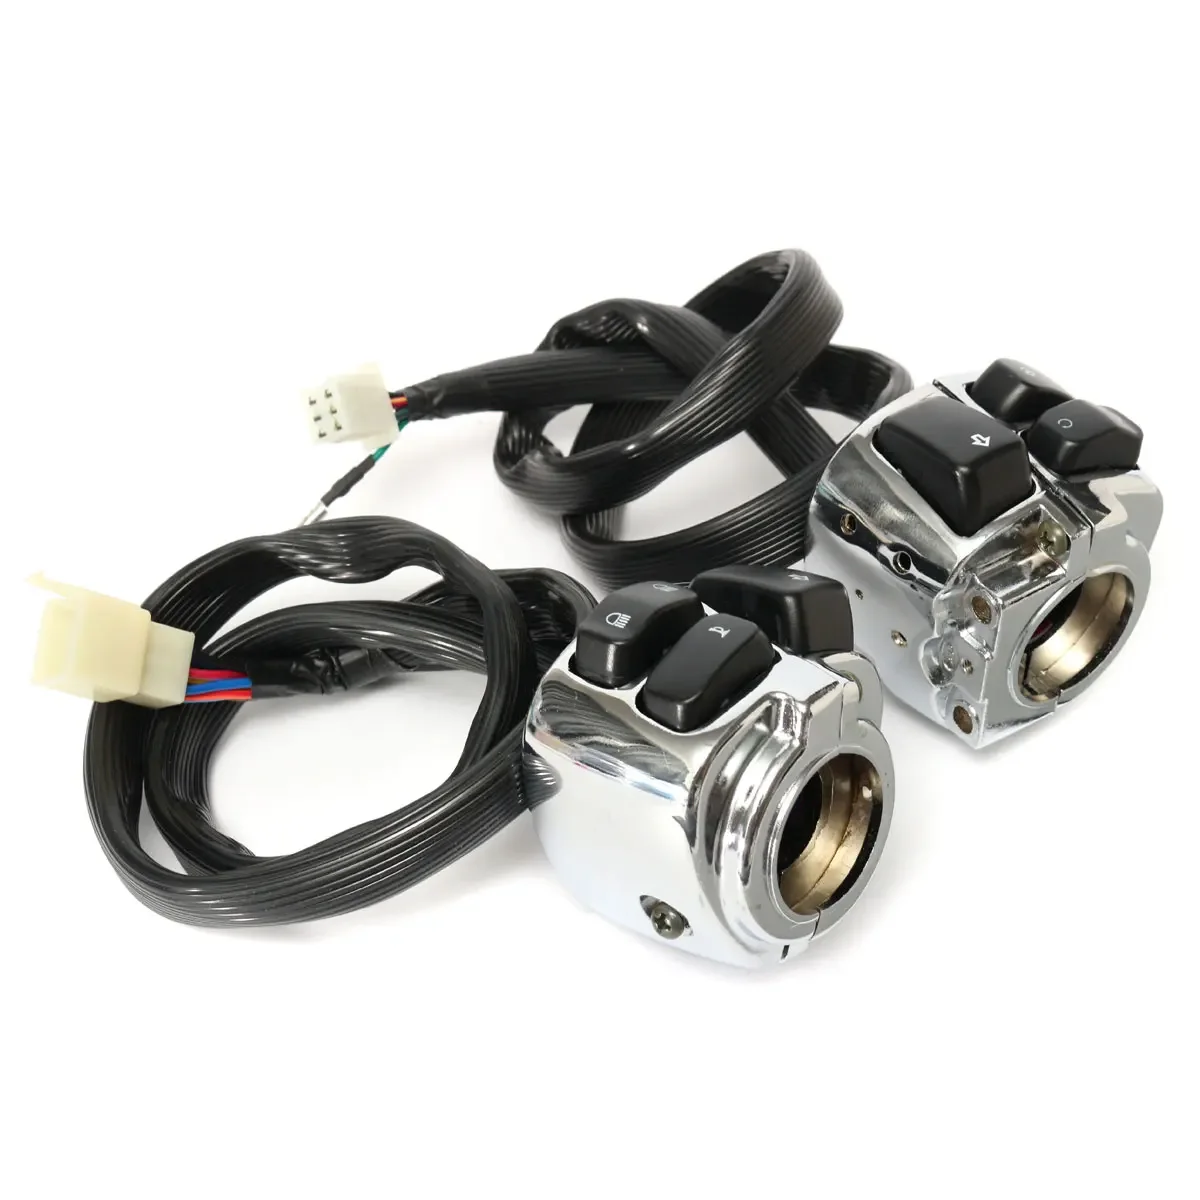 

Мотоциклетный 1 "25 мм переключатель управления на руль + жгут проводов черный/хромированный для XL883/Sportster/Dyna/V-ROD/Softail